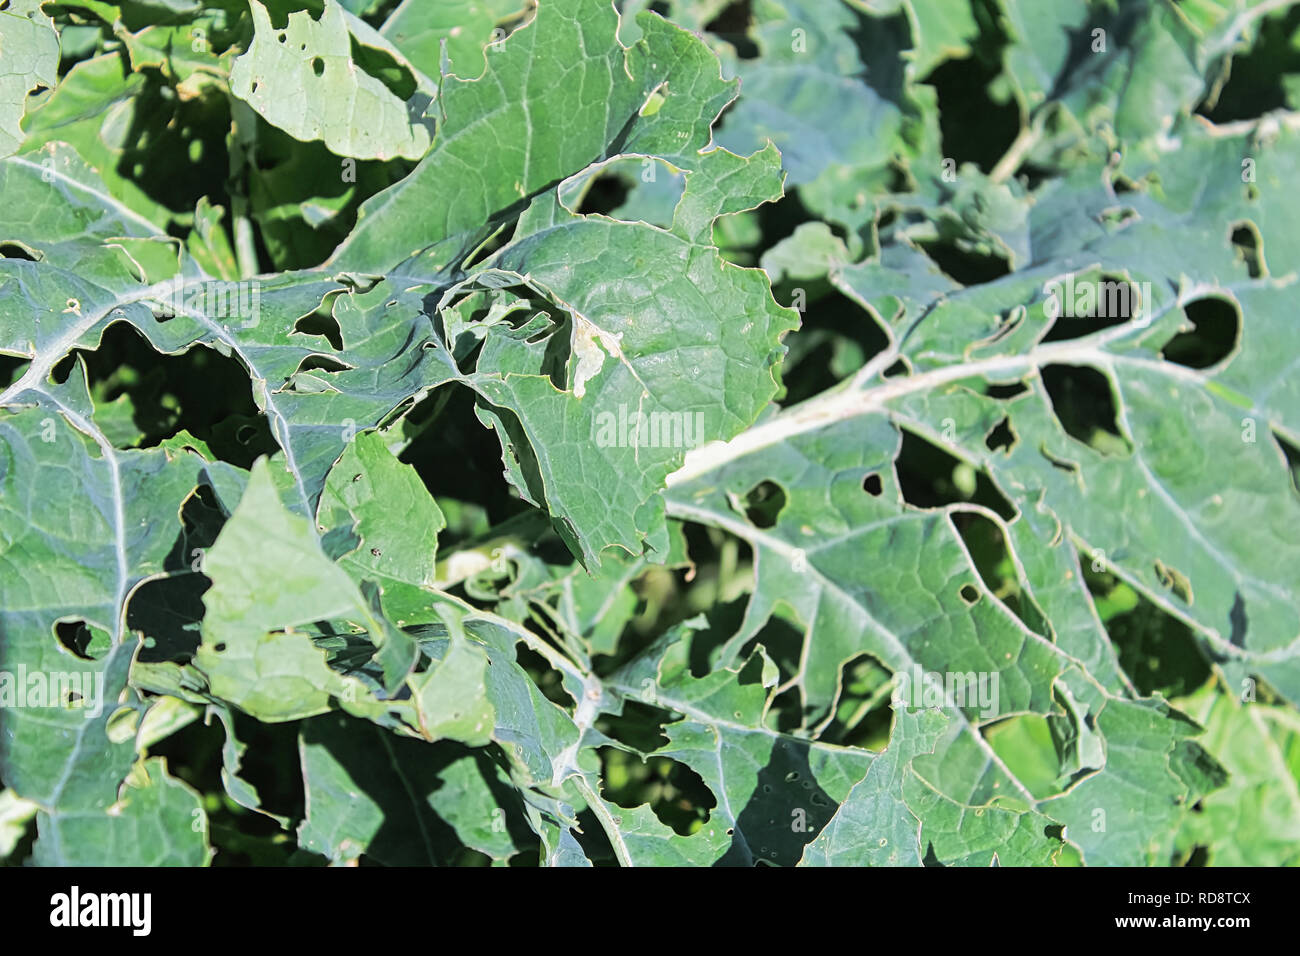 Cavolo tarma danni visibili su foglie di broccoli. Foto Stock